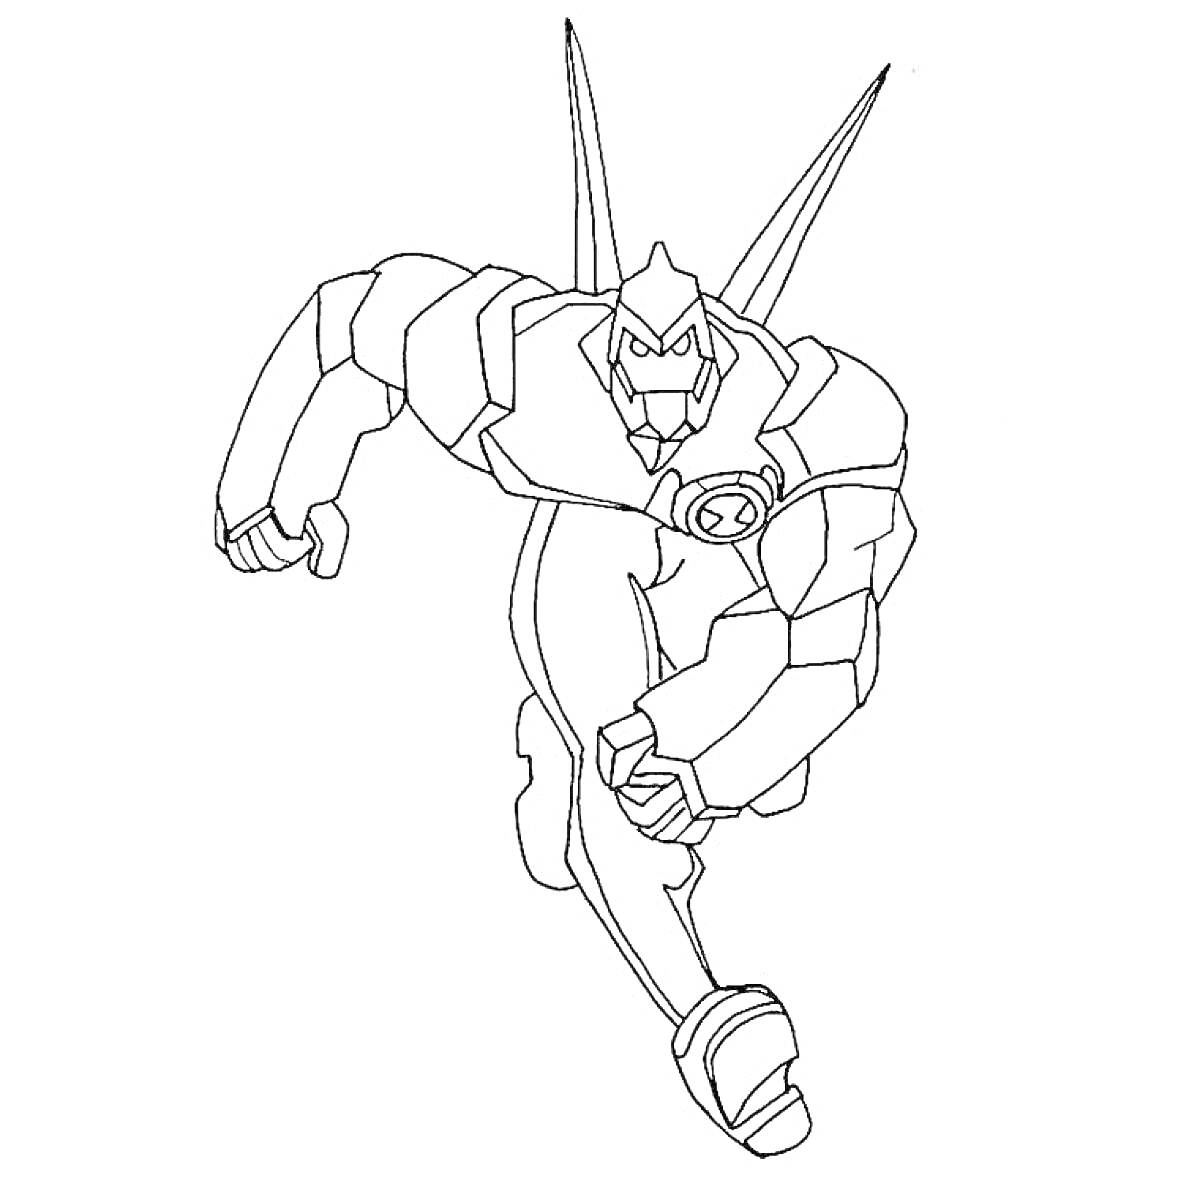 Раскраска Гуманоидное существо из Бен 10 в прыжке, с шипами на спине и значком Омнитрикса на груди